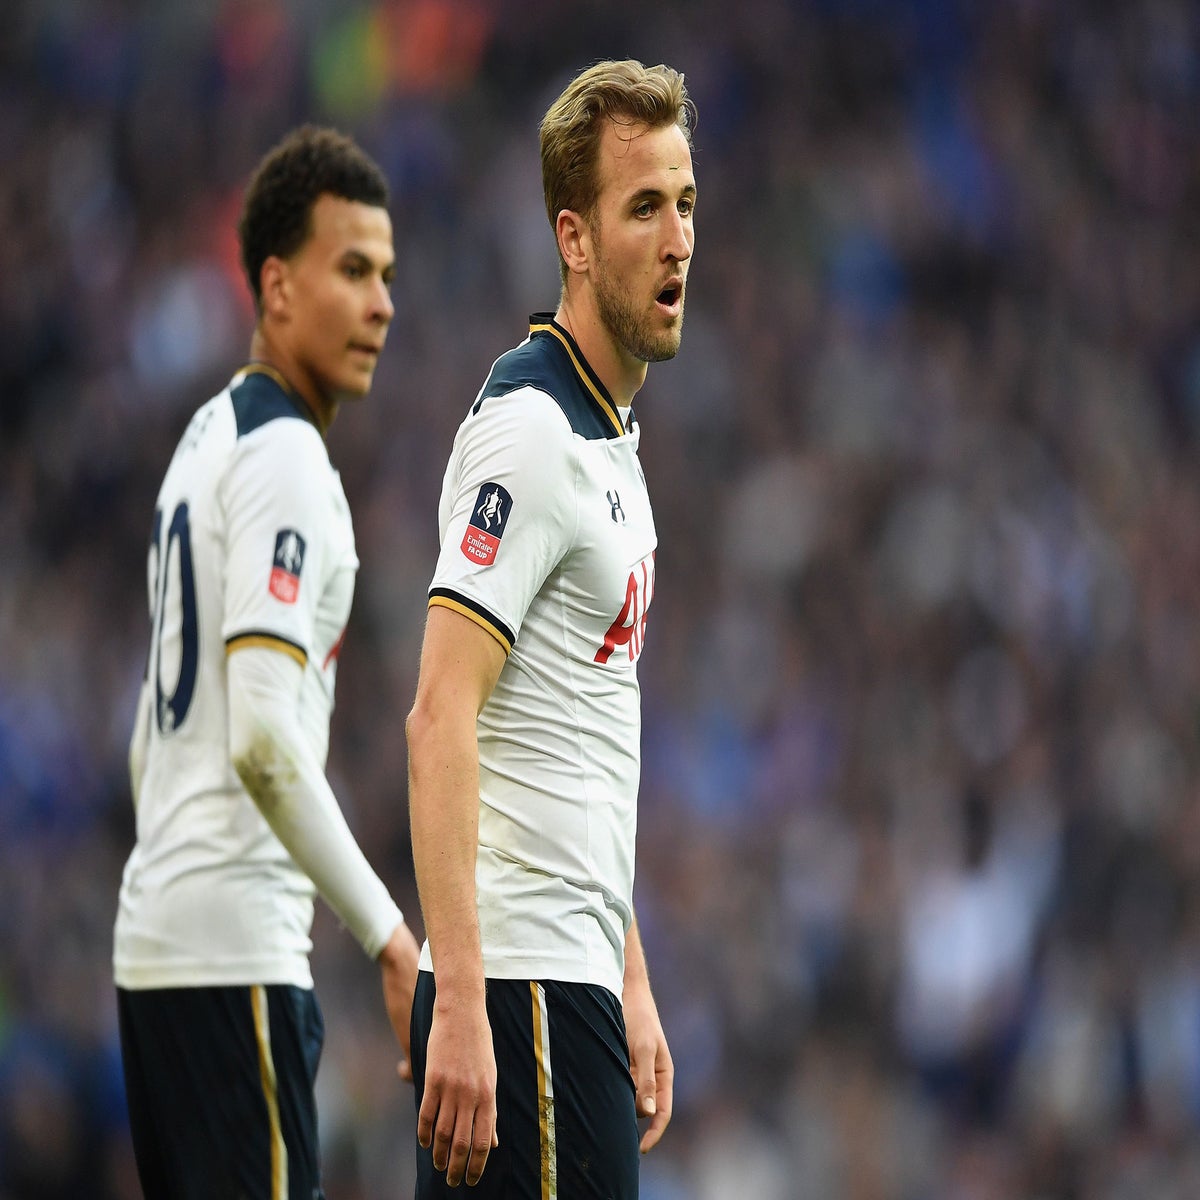 Tottenham Hotspur 2017/18 kit: Harry Kane, Dele Alli and Eric Dier